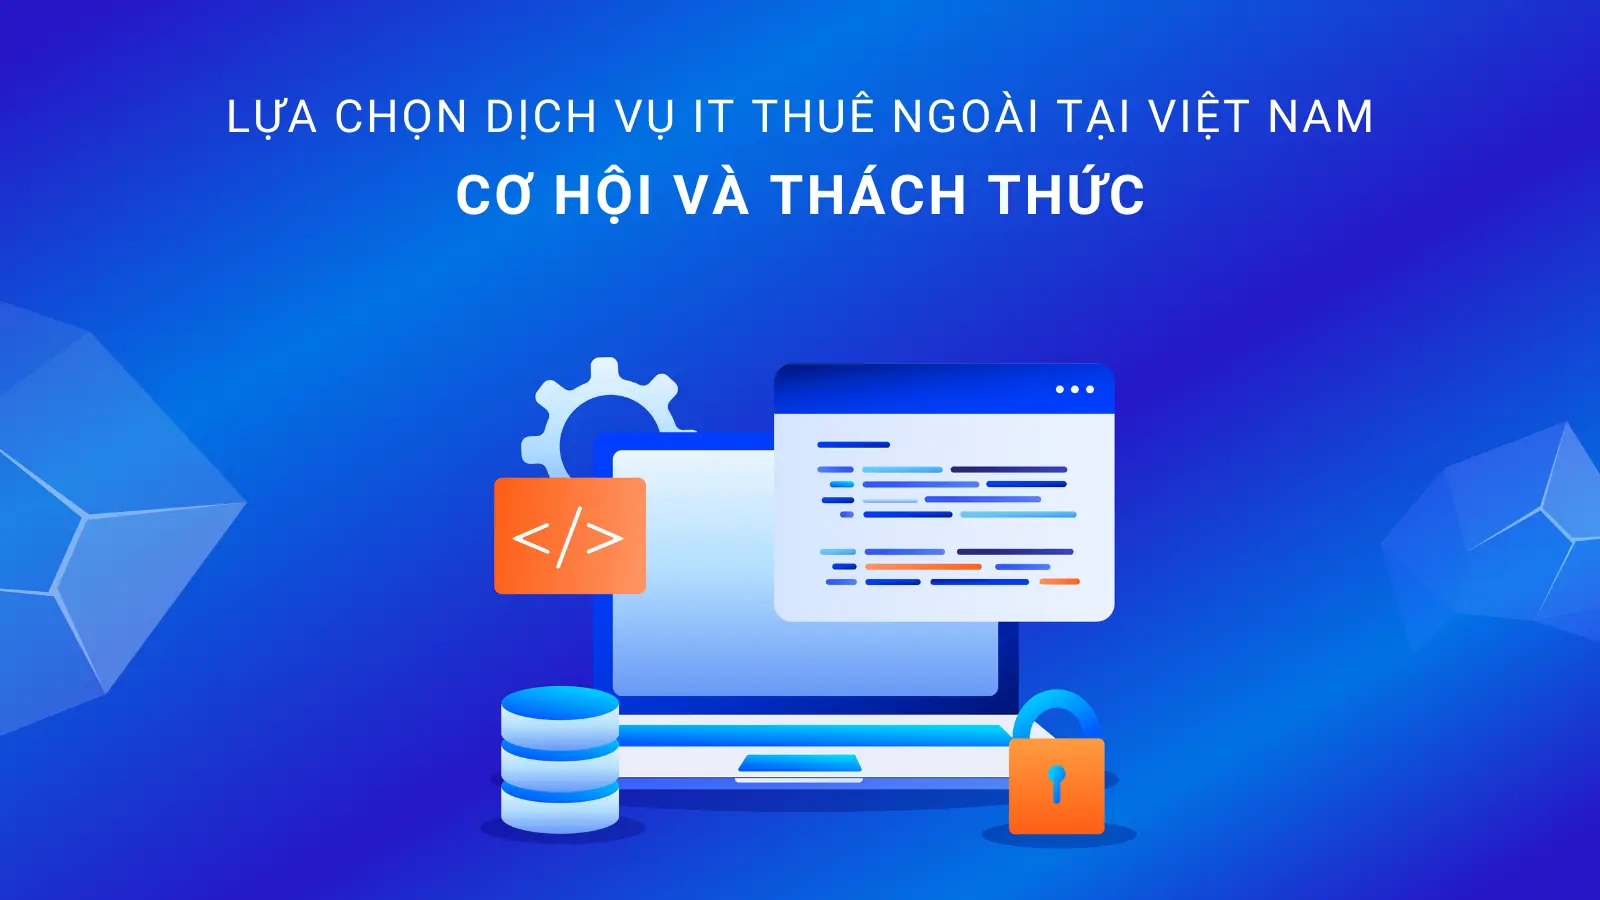 Lựa Chọn Dịch Vụ IT Thuê Ngoài Tại Việt Nam: Cơ Hội Và Thách Thức